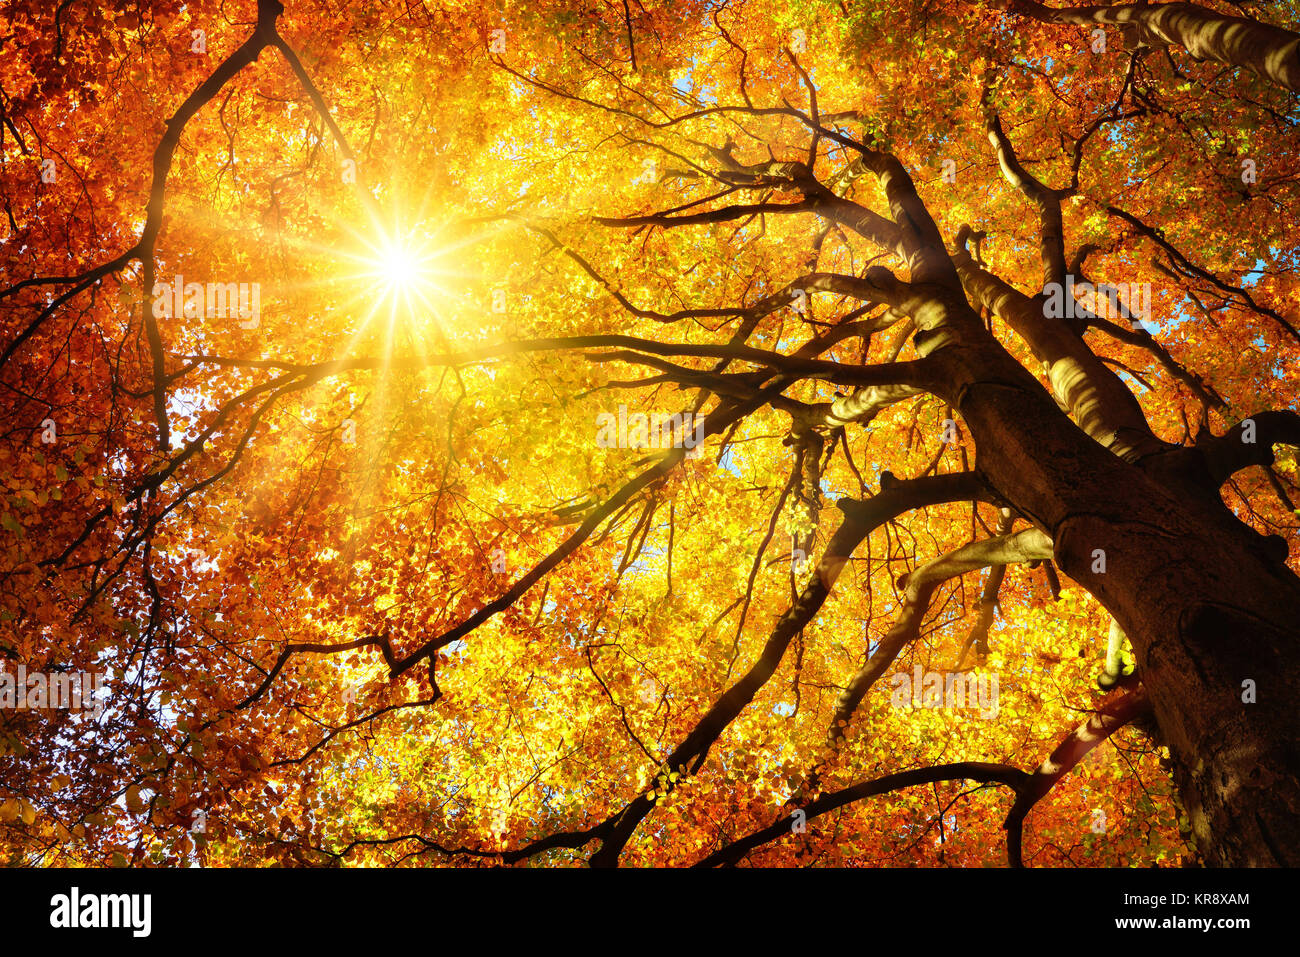 Soleil d'automne par chaleureusement les feuilles d'un hêtre d'or majestueux, worm's eye view Banque D'Images